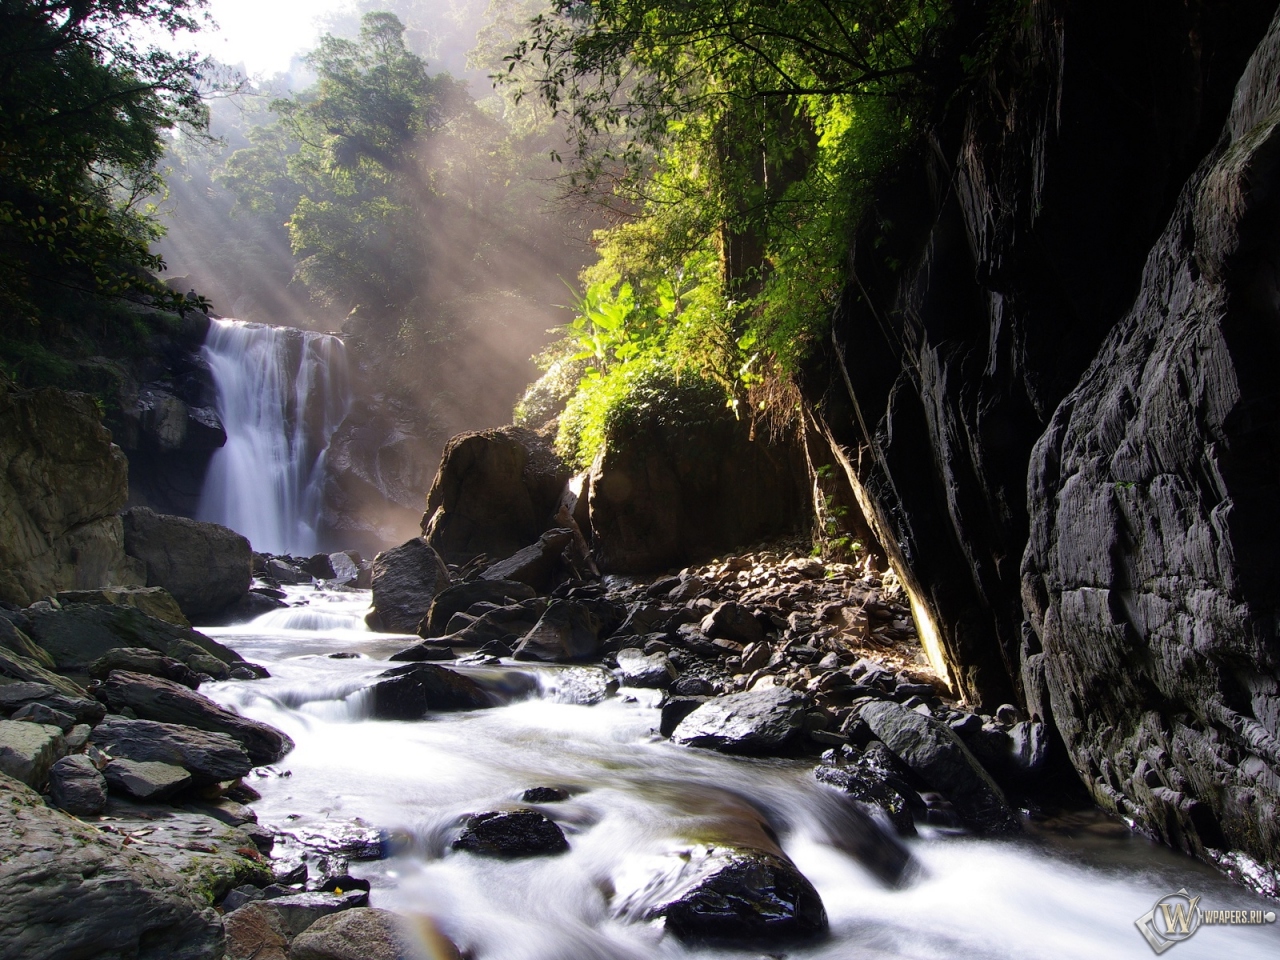 Neidong waterfall 1280x960